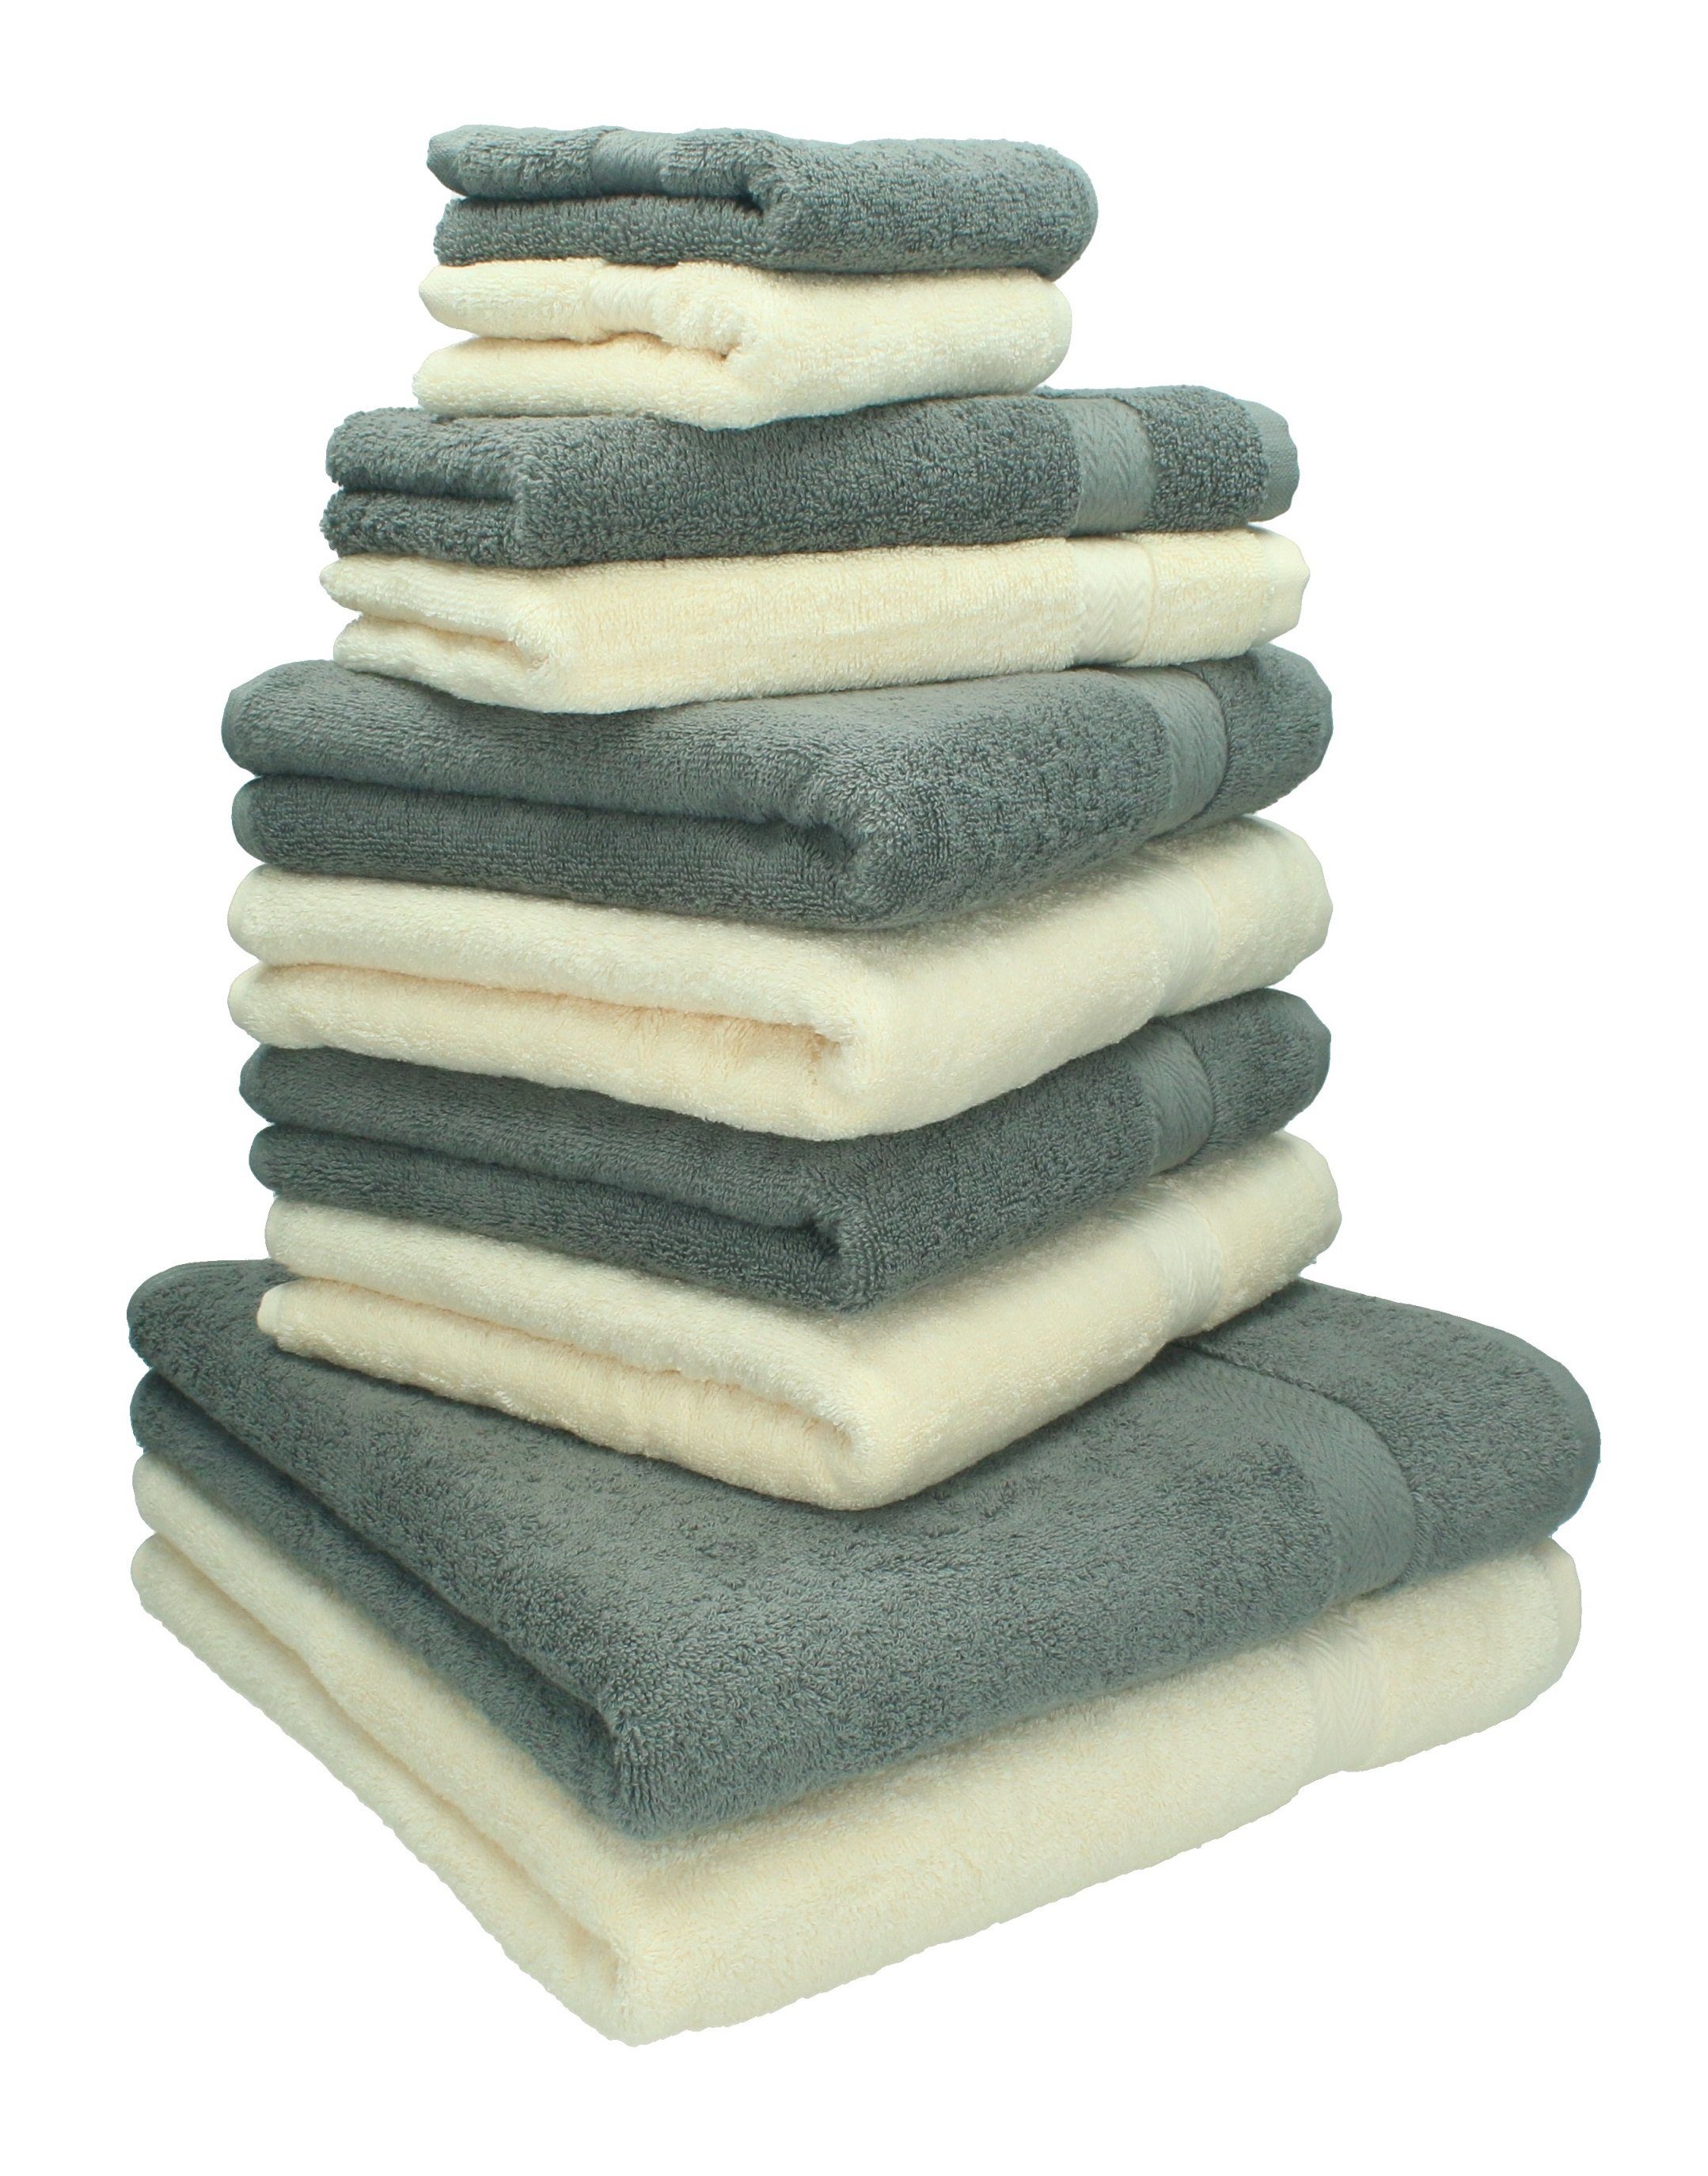 Handtuch Set Classic Baumwolle 100% und Handtücher-Set 10-TLG. Farbe beige Betz anthrazit grau,